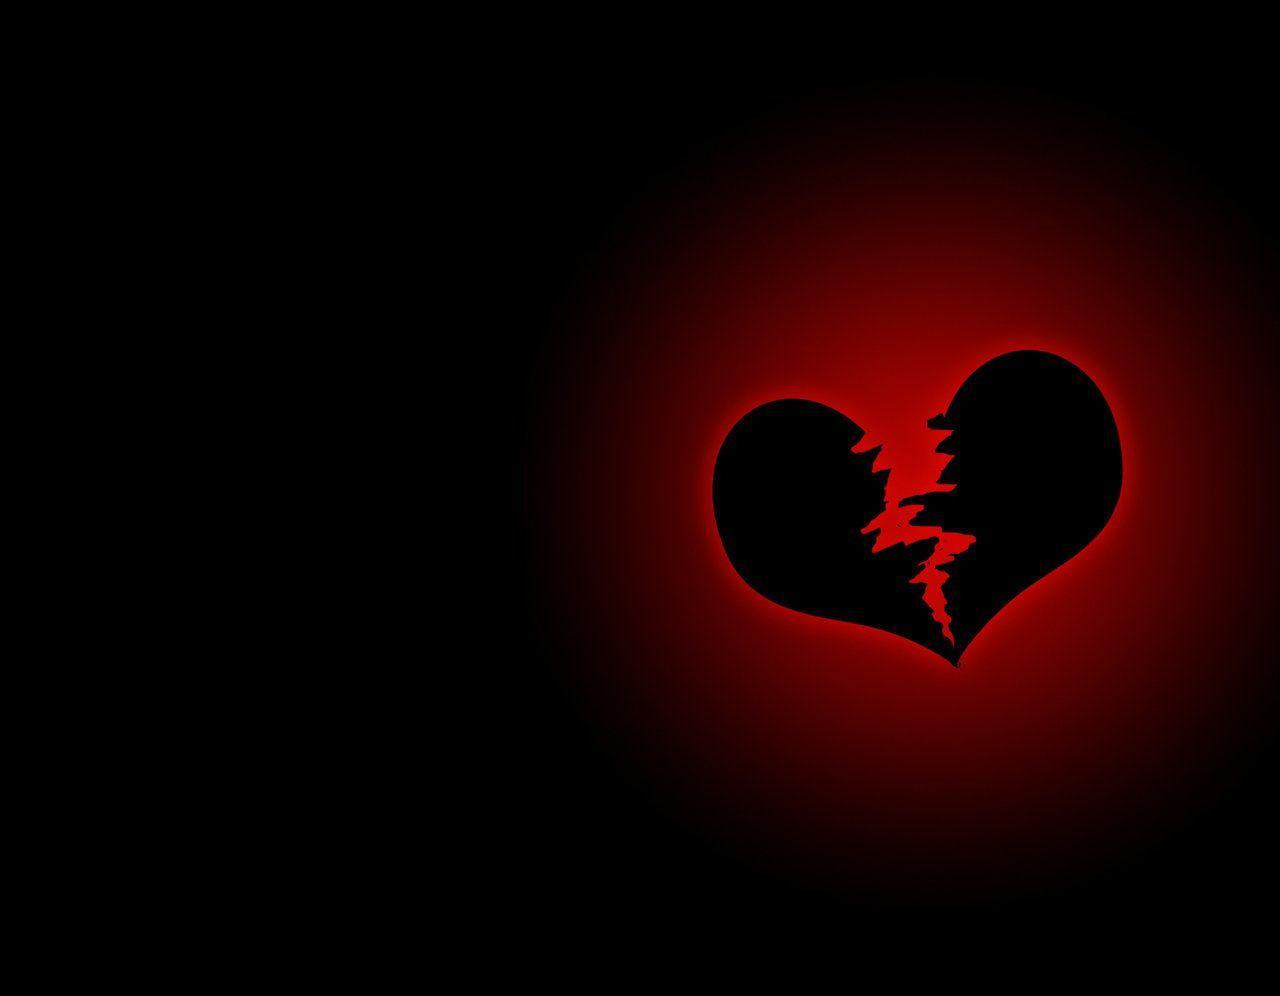 Love Broken Heart Wallpapers - Top Free Love Broken Heart ...